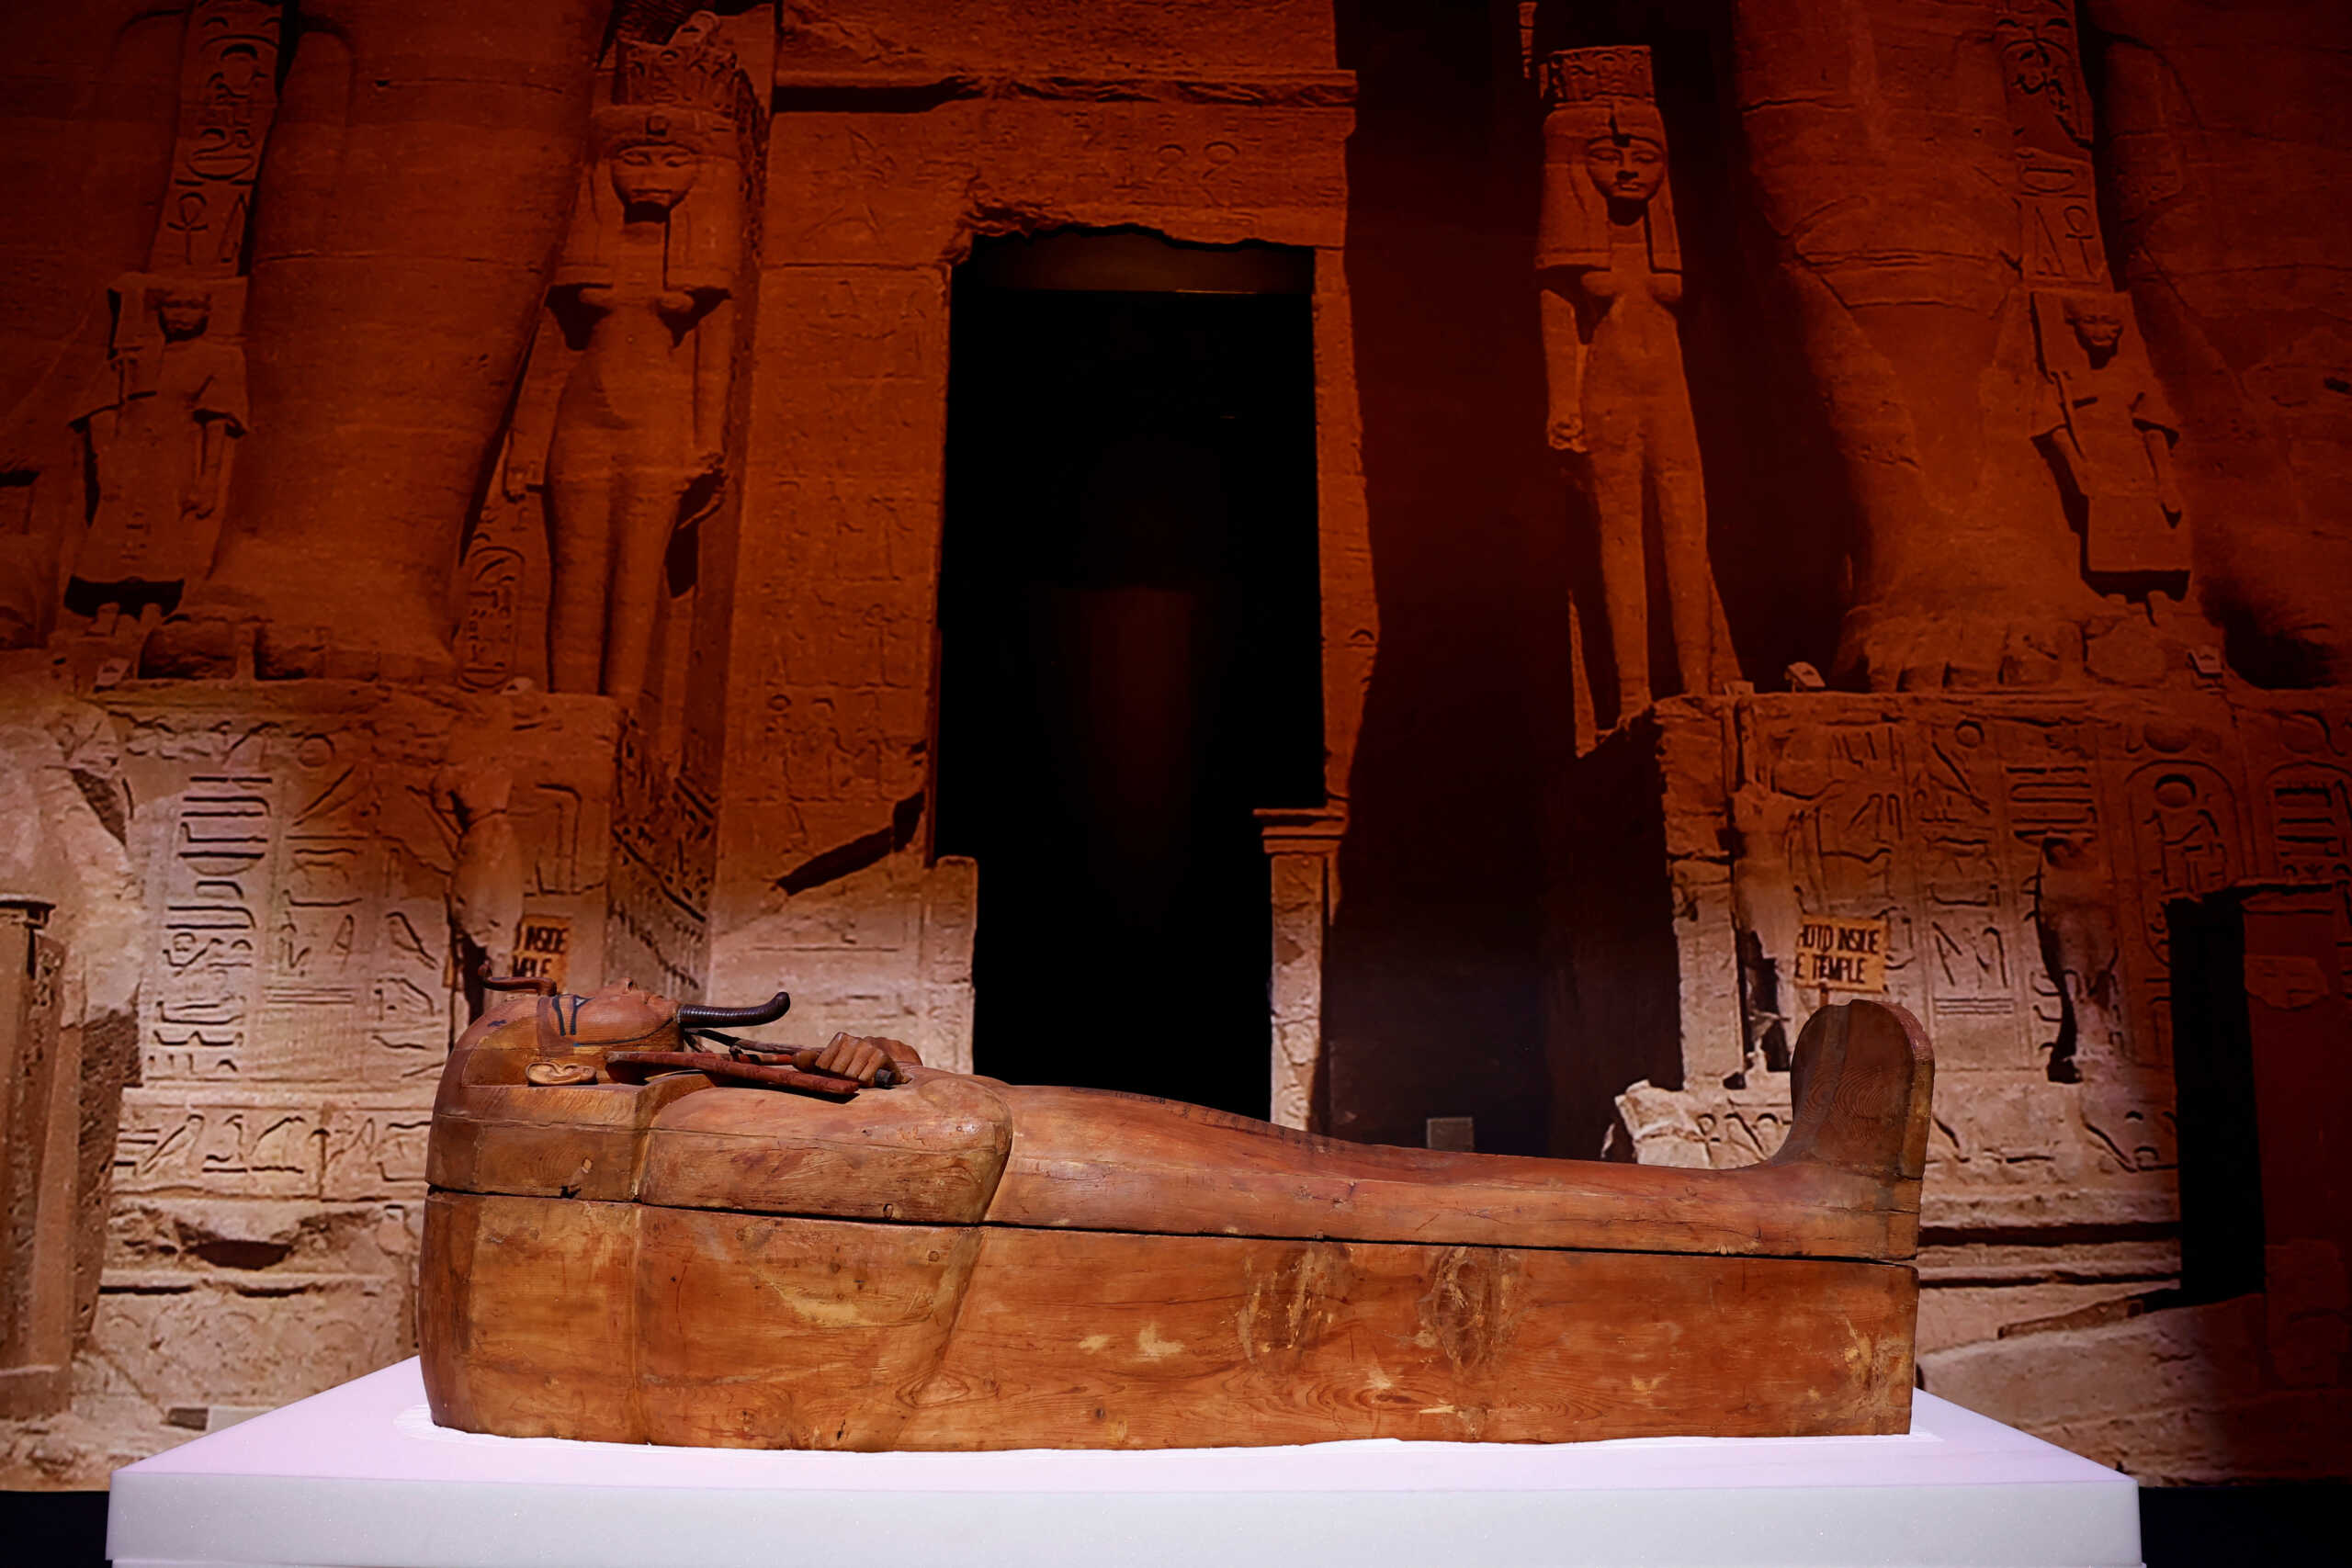 Μούμιες της Πτολεμαϊκής Περιόδου στον αξονικό τομογράφο – Οδοντικά σφραγίσματα και γυναίκες γιατροί στην αρχαία Αίγυπτο